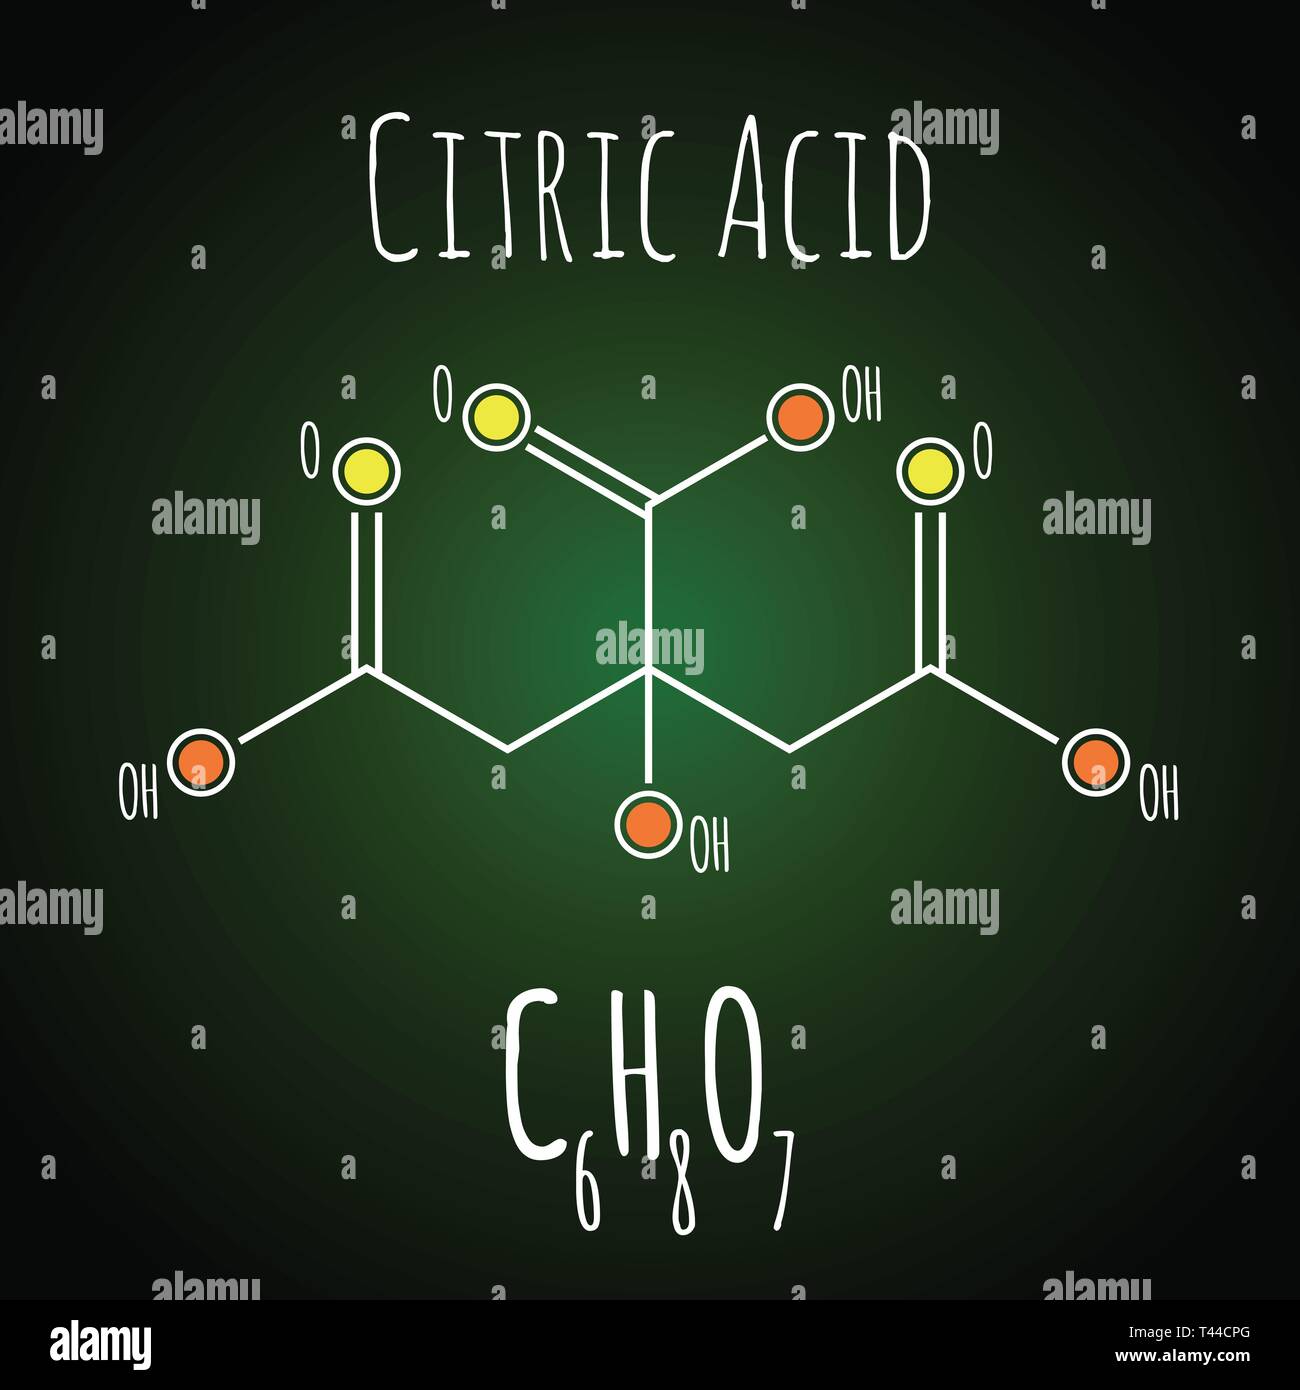 Citric acid structural skeletal chemical formula on dark background Stock Vector